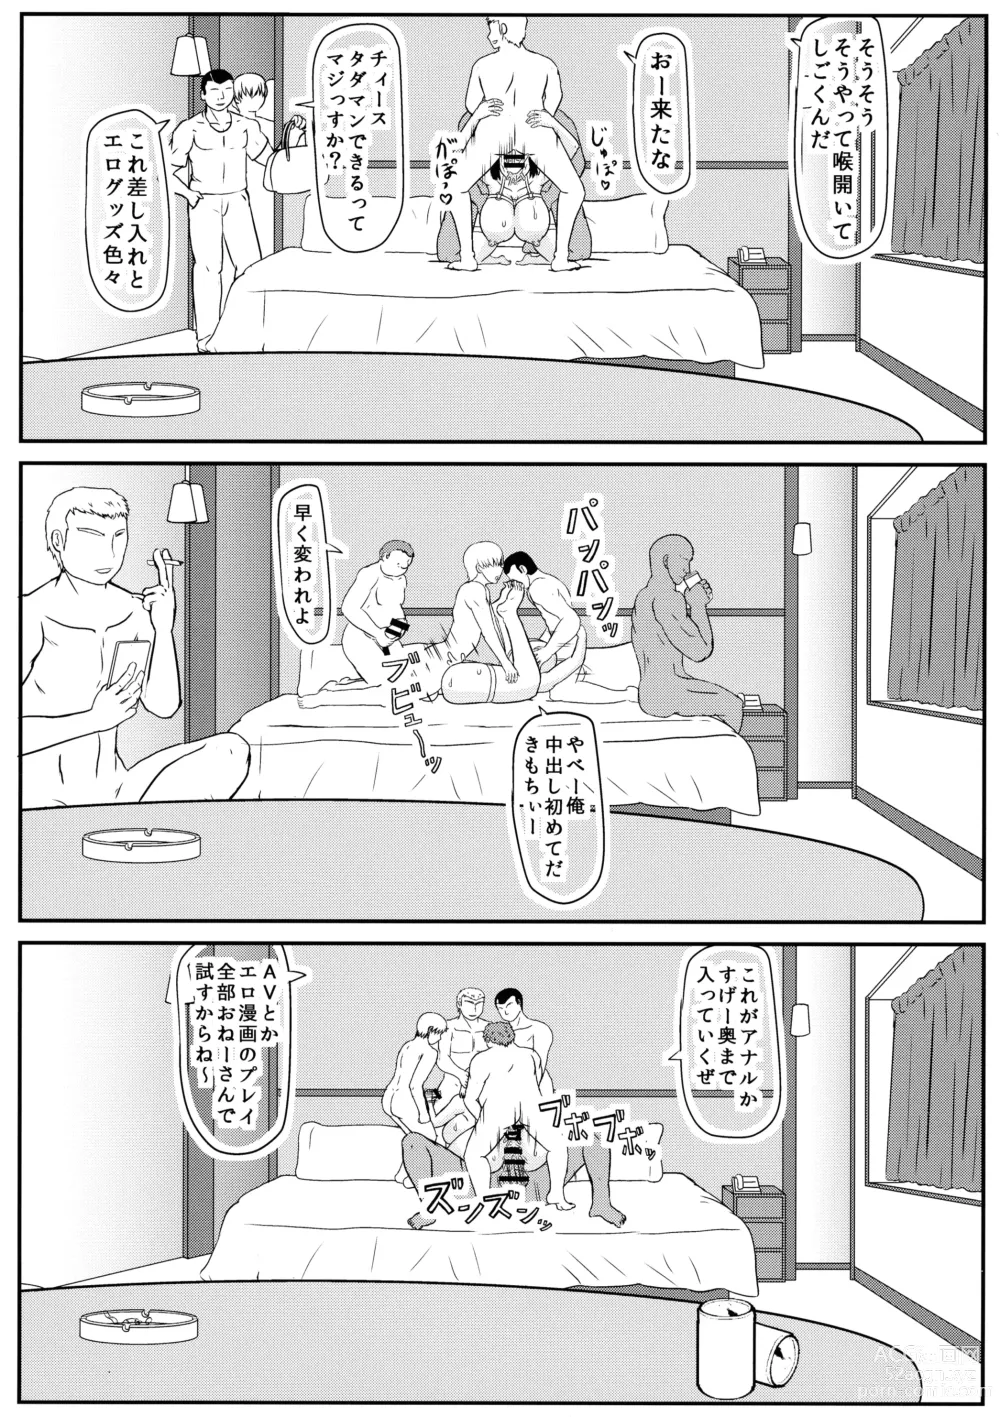 Page 12 of doujinshi MISS JUDEGE Daraku Binjo Saori